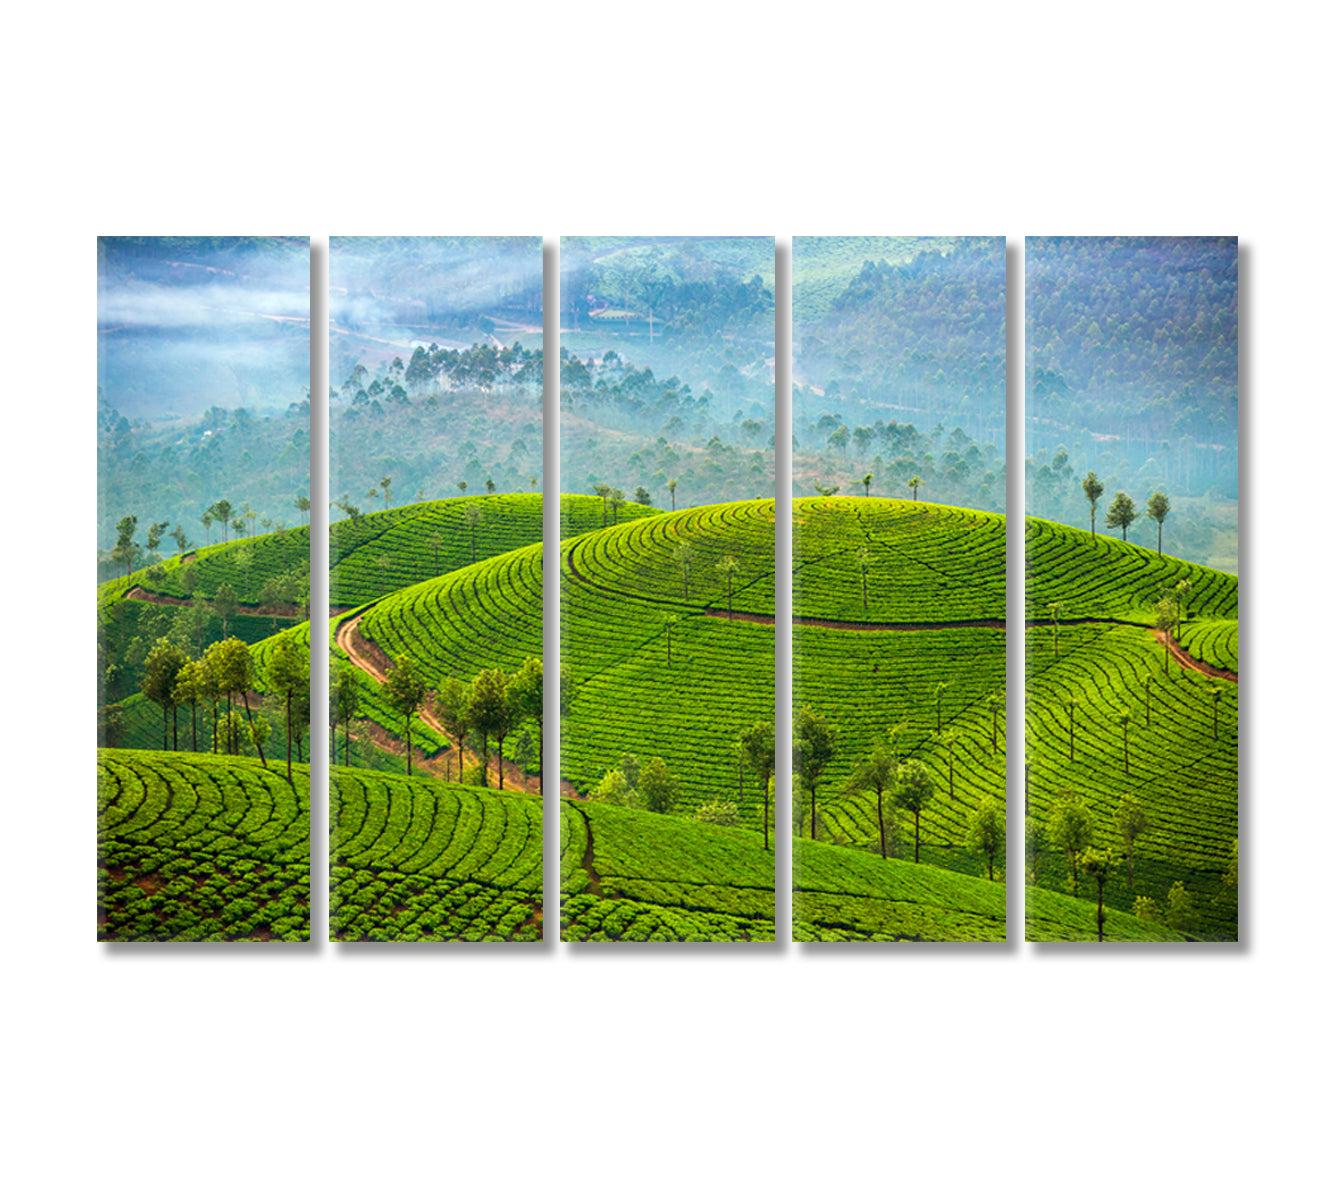 Tea Plantations in Munnar India Canvas Print-Canvas Print-CetArt-5 Panels-36x24 inches-CetArt